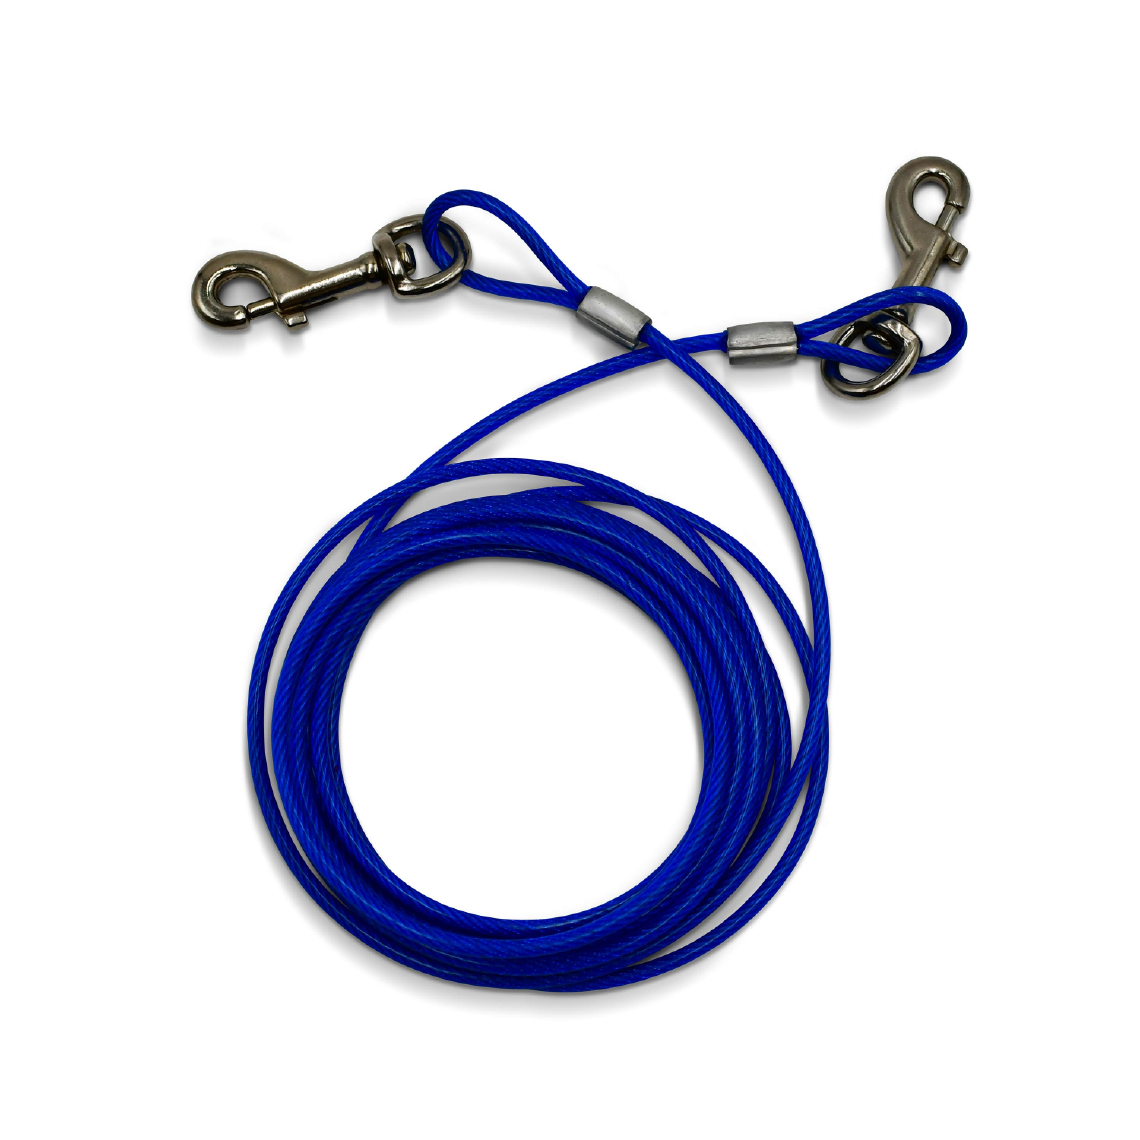 Alice'S Garden - Câble gainé de 4.5m de long et 5mm d’épaisseur bleu, avec mousquetons - Laisse pour chien